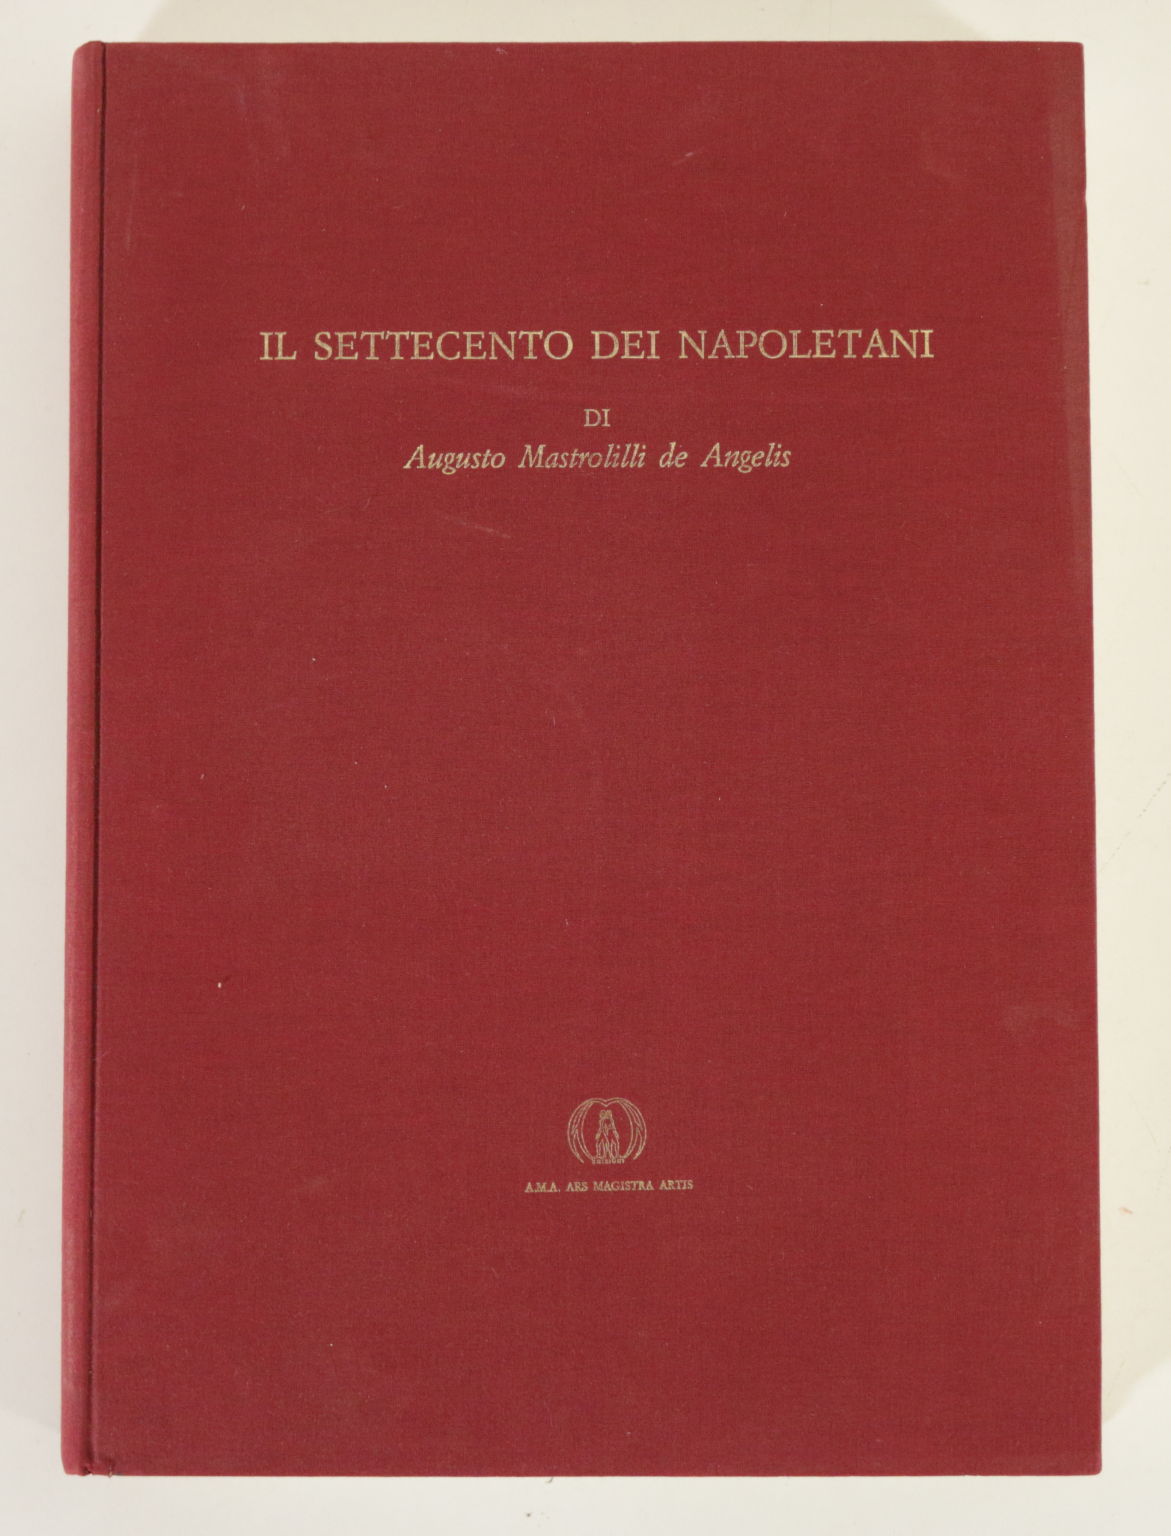 Das achtzehnte Jahrhundert der Neapolitaner von Augusto Mastroill, Angelo Calabrese